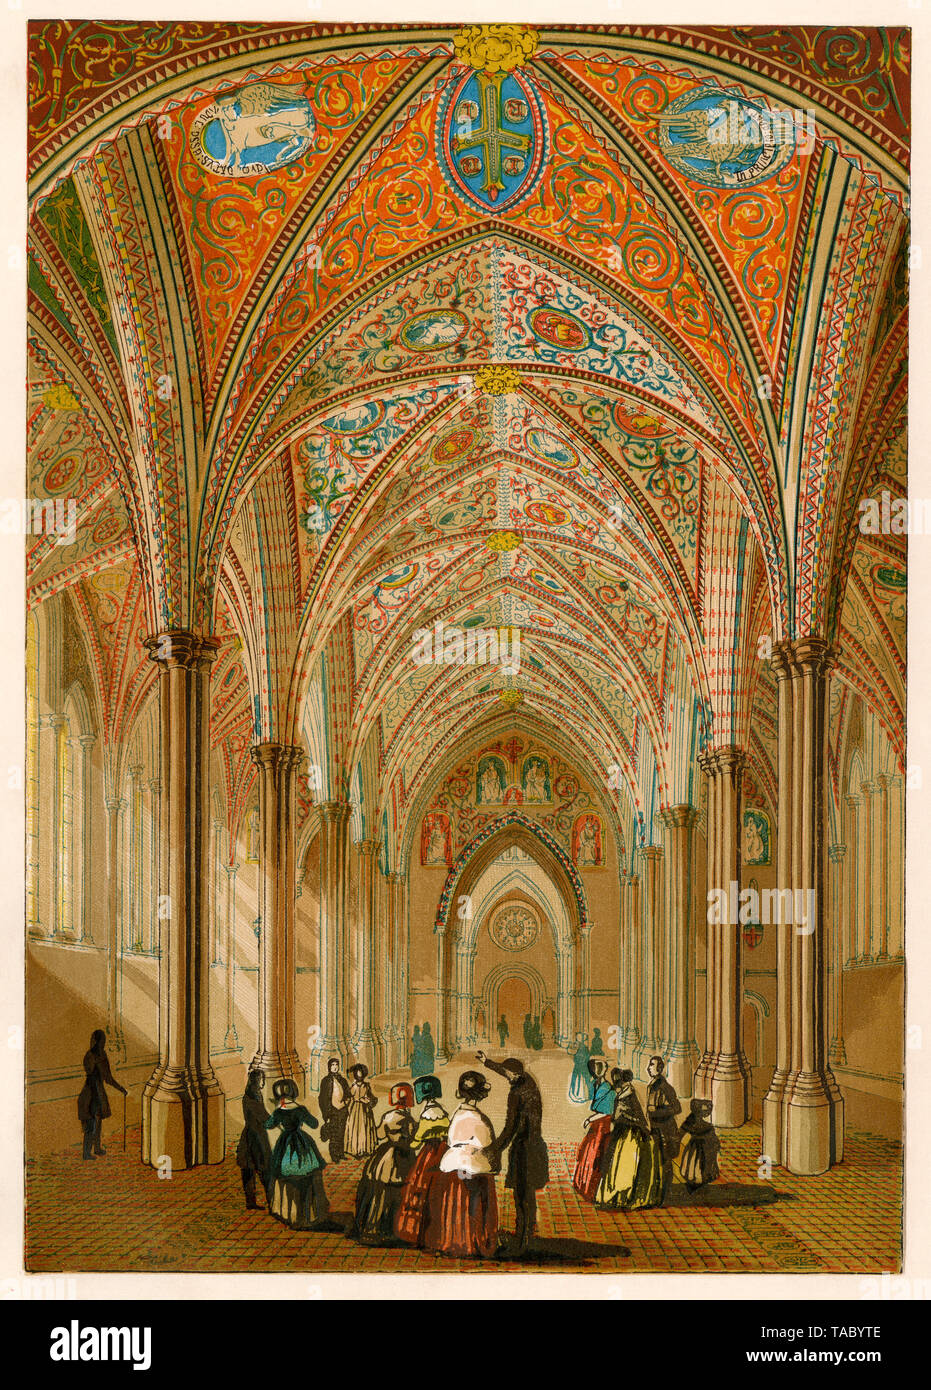 L'intérieur de la cité médiévale de l'église du Temple à Londres, vue dans les années 1800. Lithographie couleur Banque D'Images